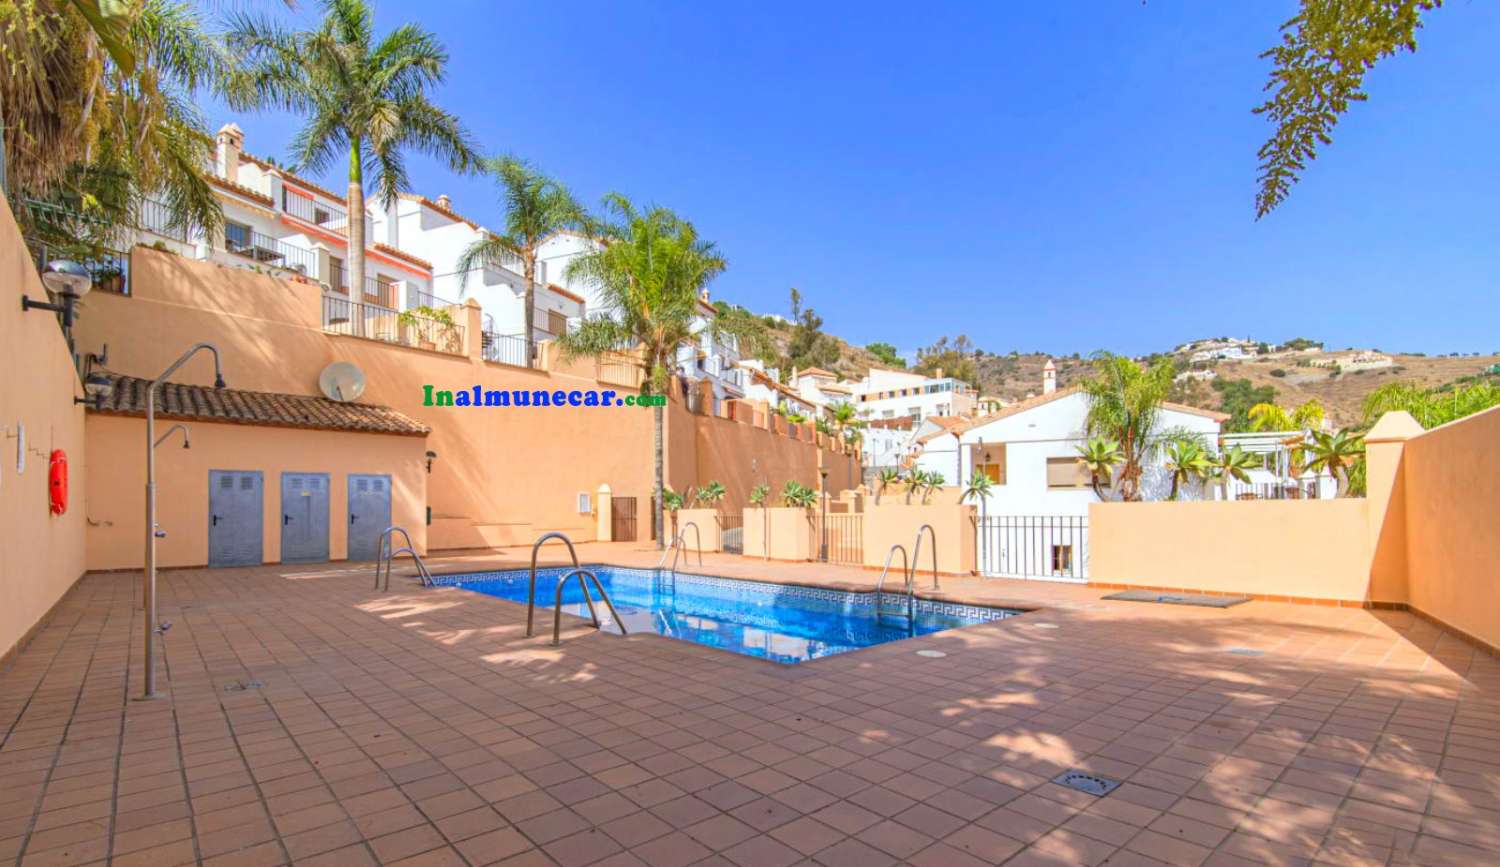 Casa adosada en venta en Almuñecar, muy soleada y con piscina privada.